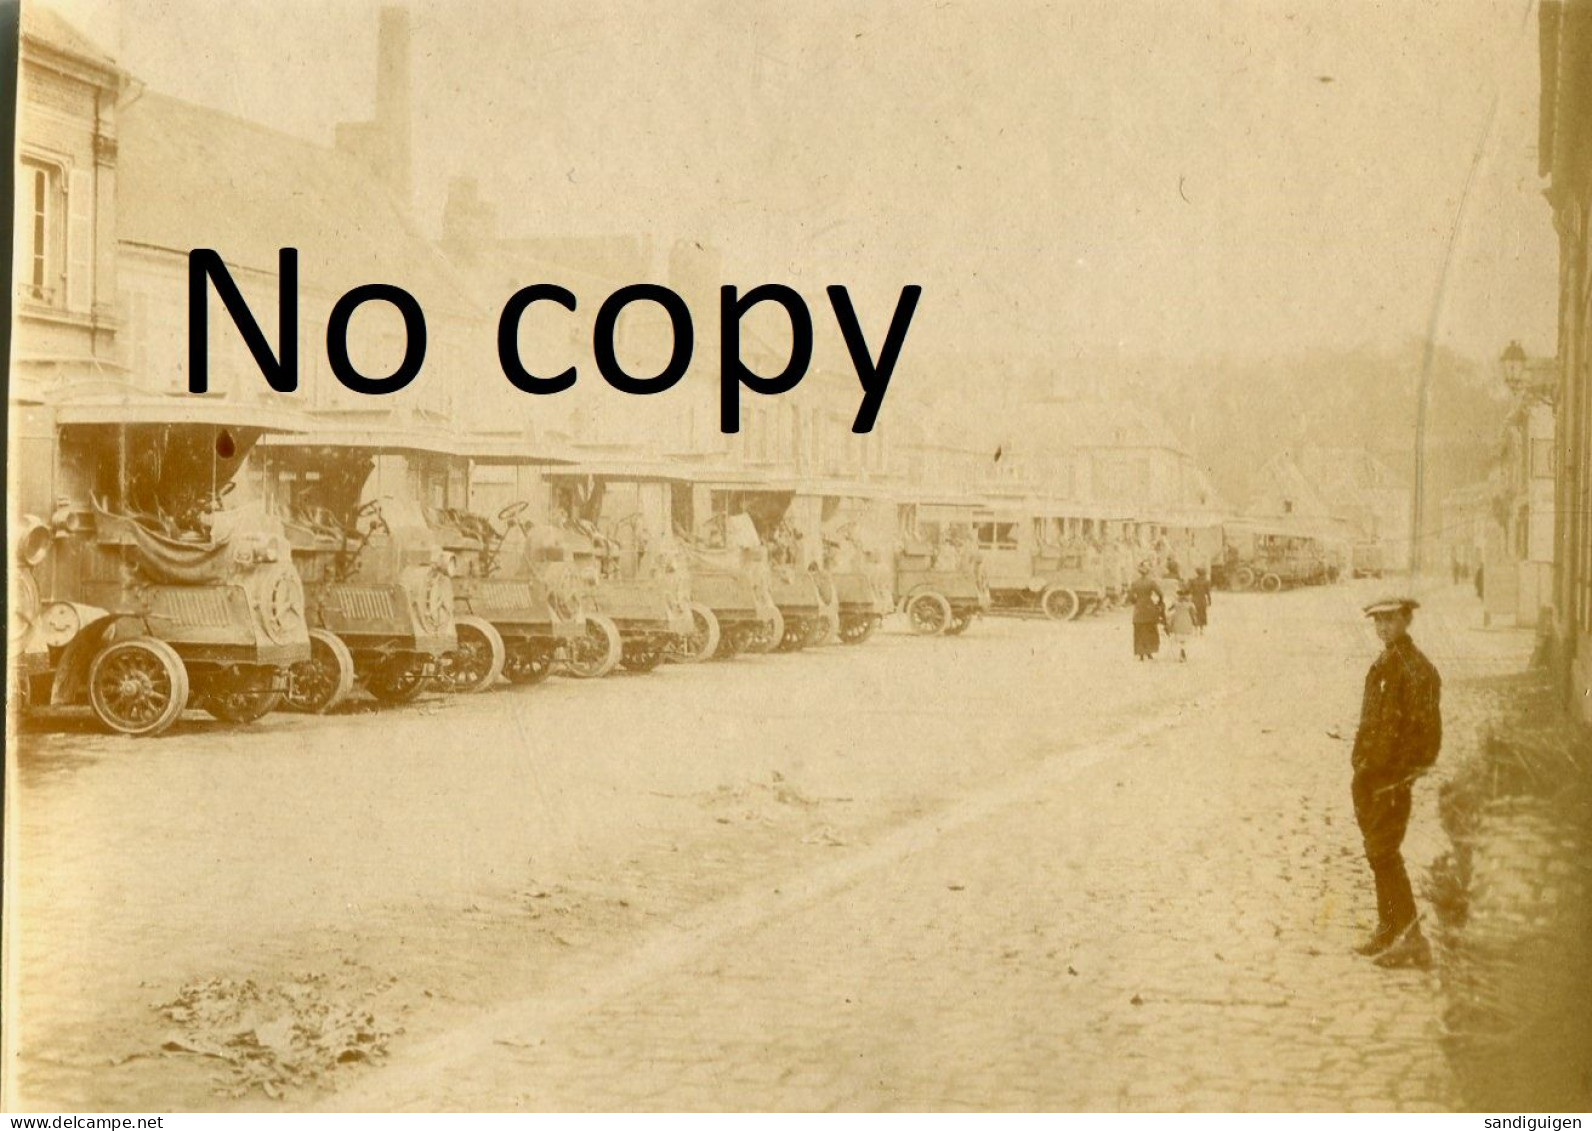 PHOTO FRANCAISE - LES AUTOS - CAMION A DOULLENS PRES DE BEAUVAL SOMME - GUERRE 1914 1918 - Krieg, Militär